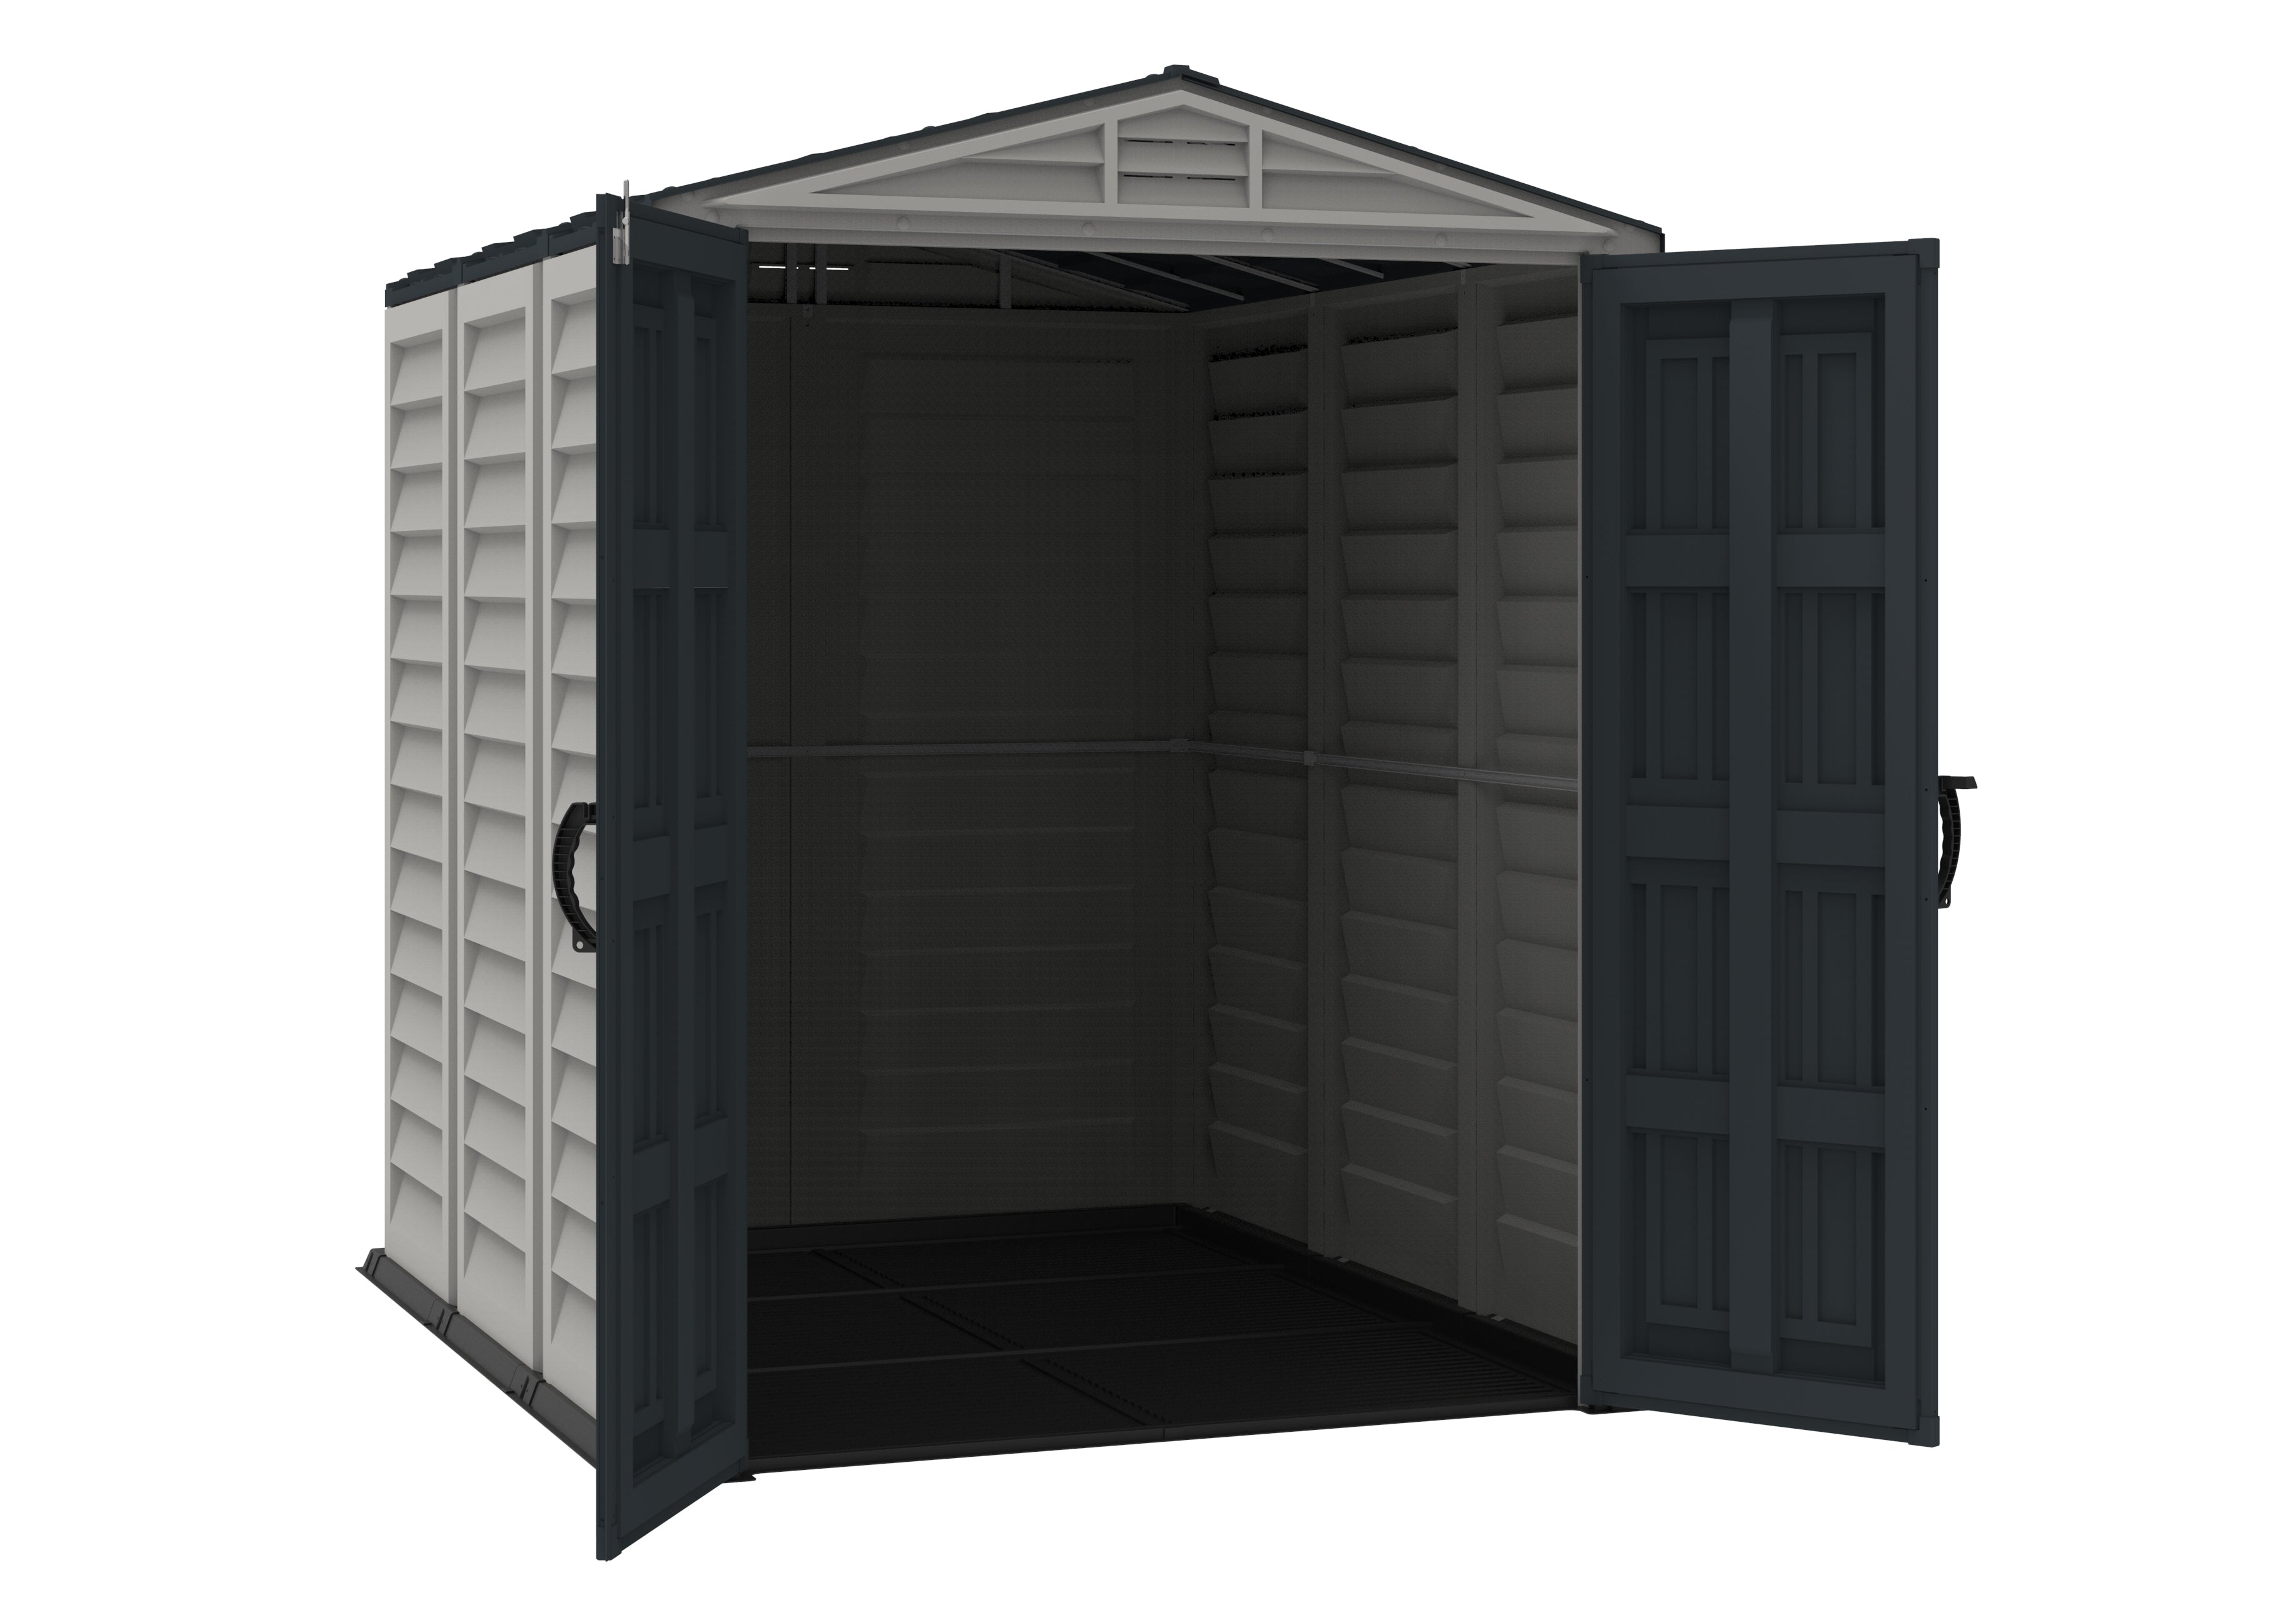 Open door view of Duramax YardMate Plus 5x8 shed, highlighting robust door mechanism and floor panel, suitable for secure outdoor storage.